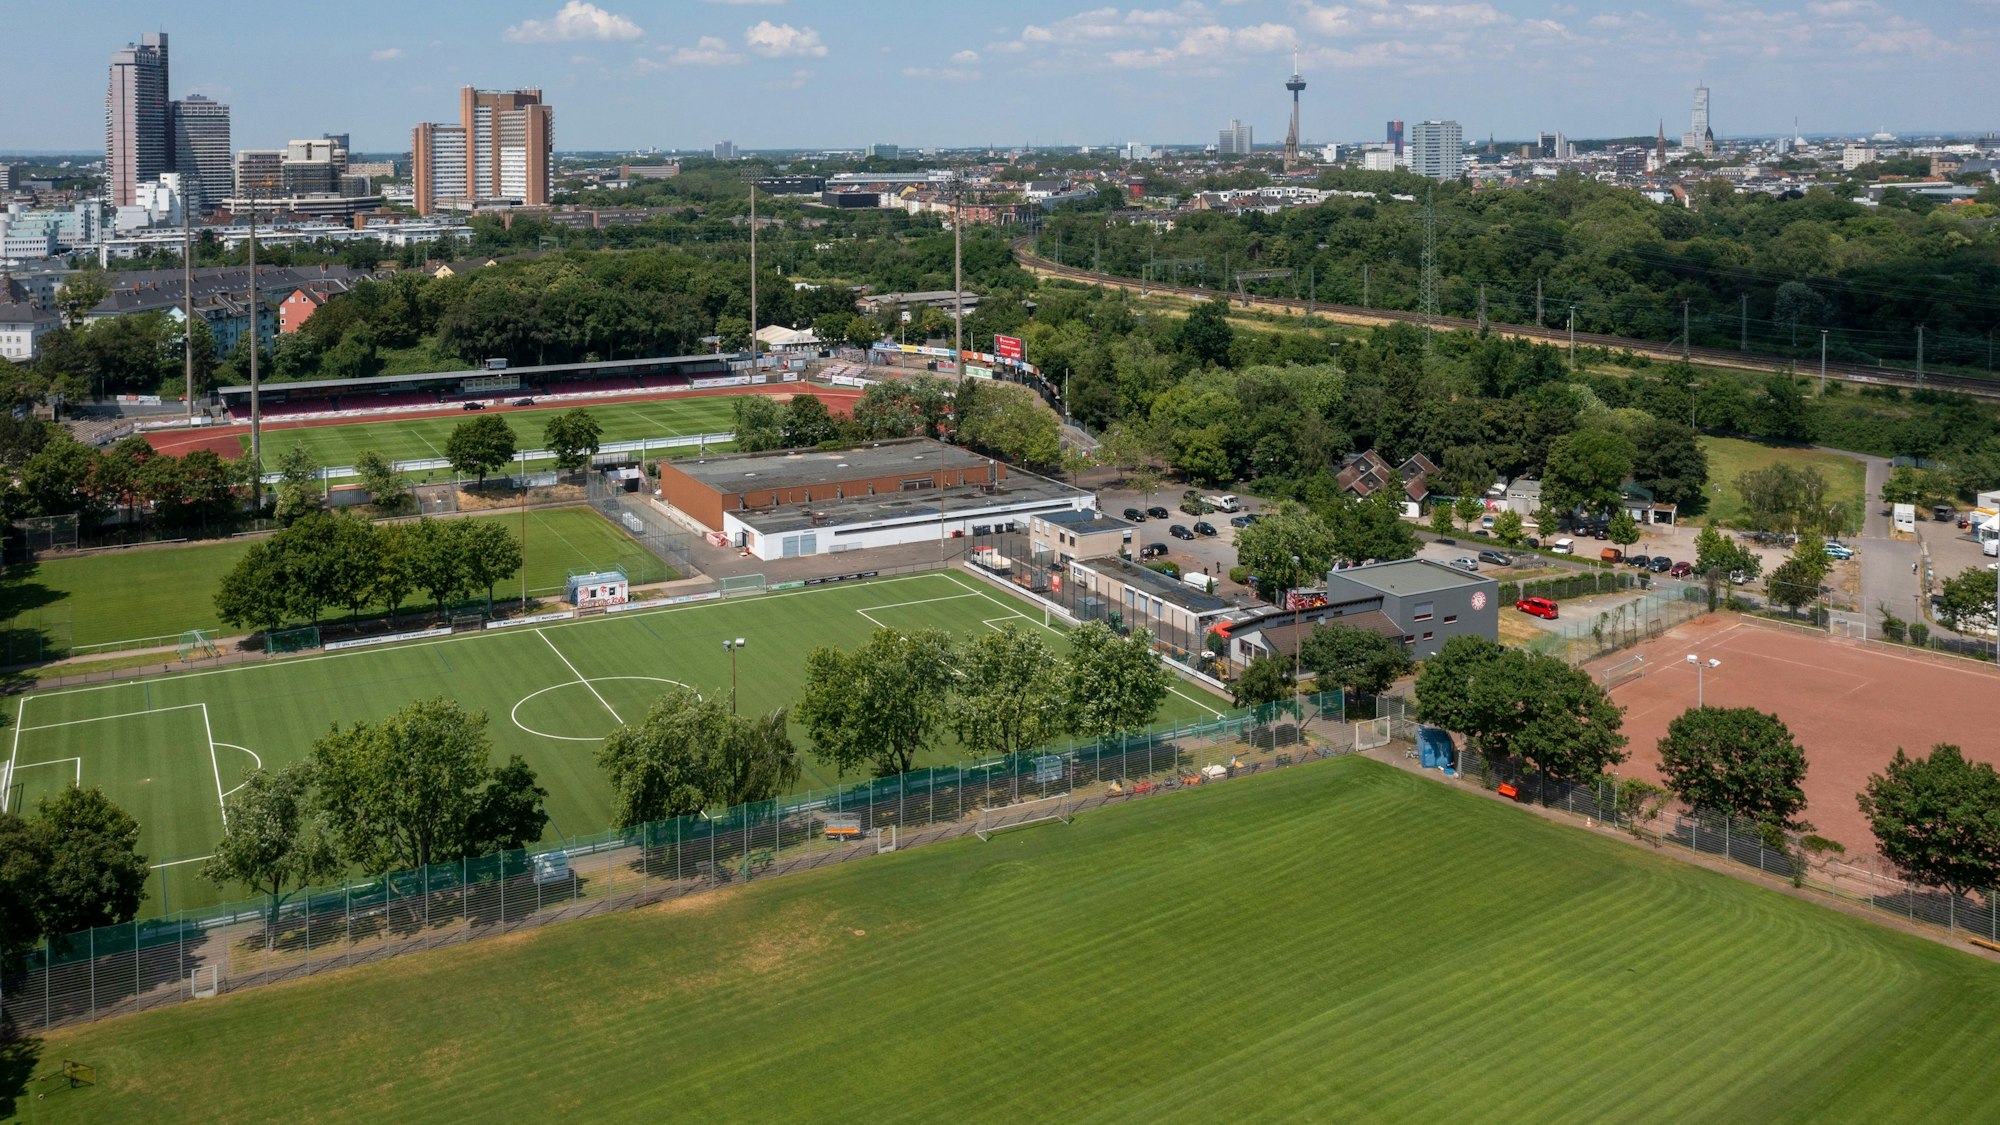 Luftaufnahme des Jean-Löring-Sportparks mit mehreren Fußballfeldern.